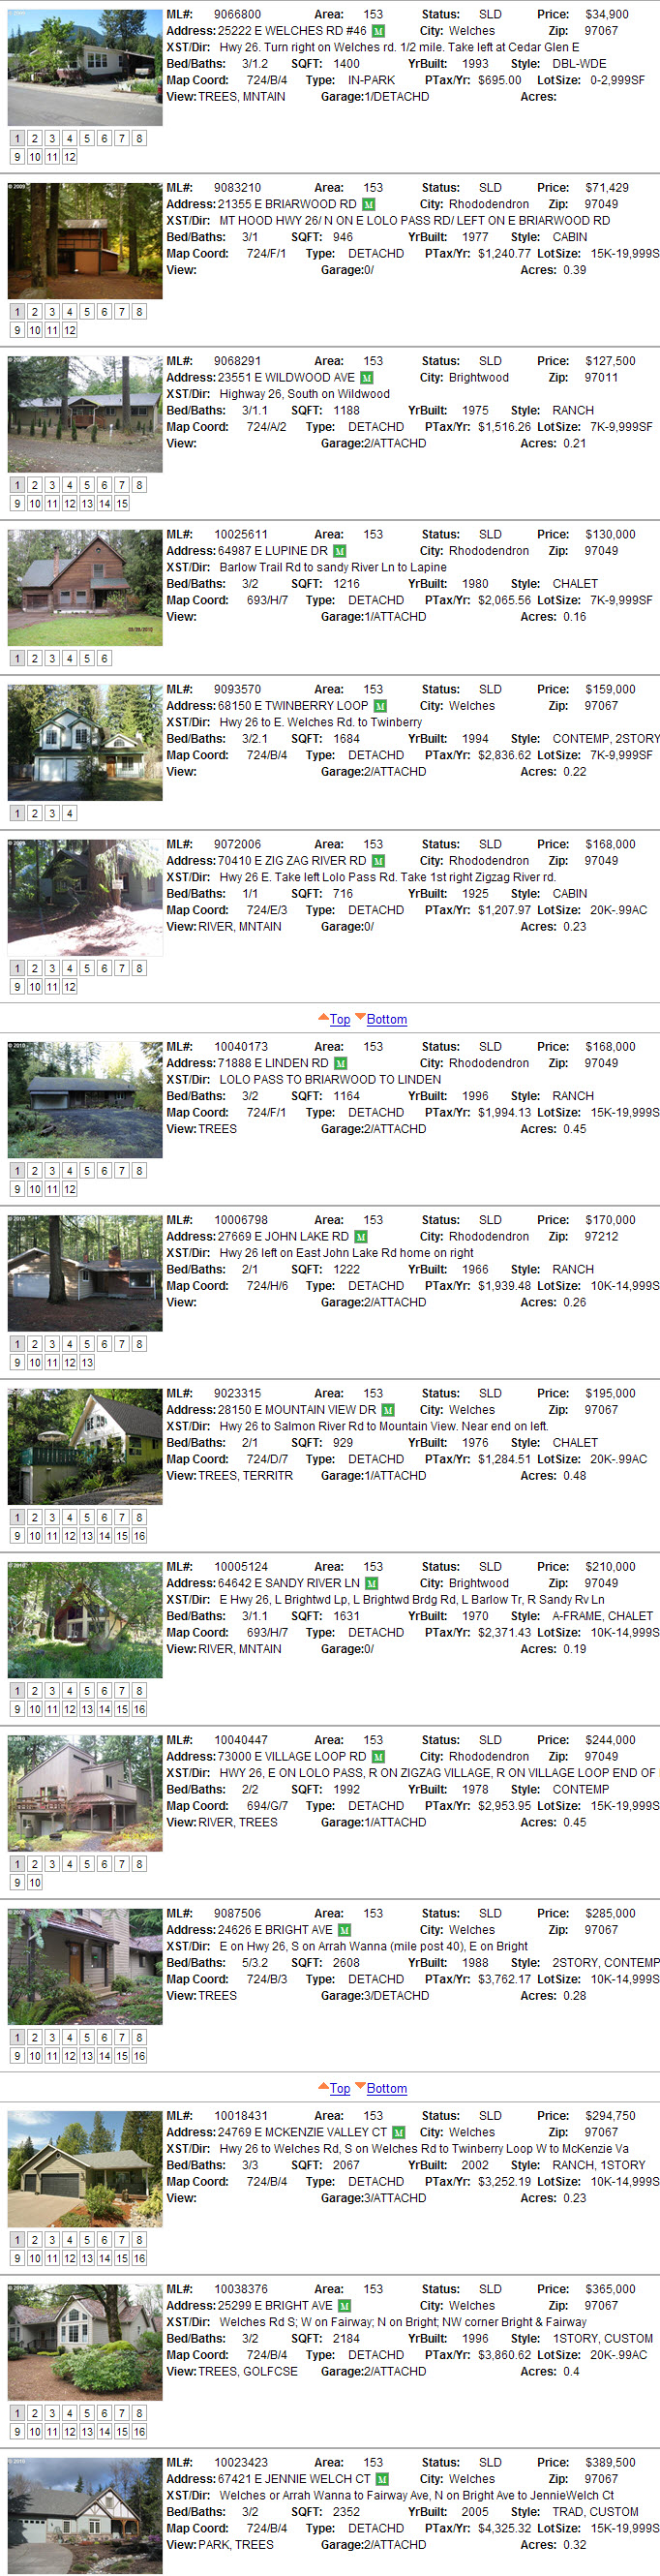 Mt. Hood Real Estate sales for June 2010